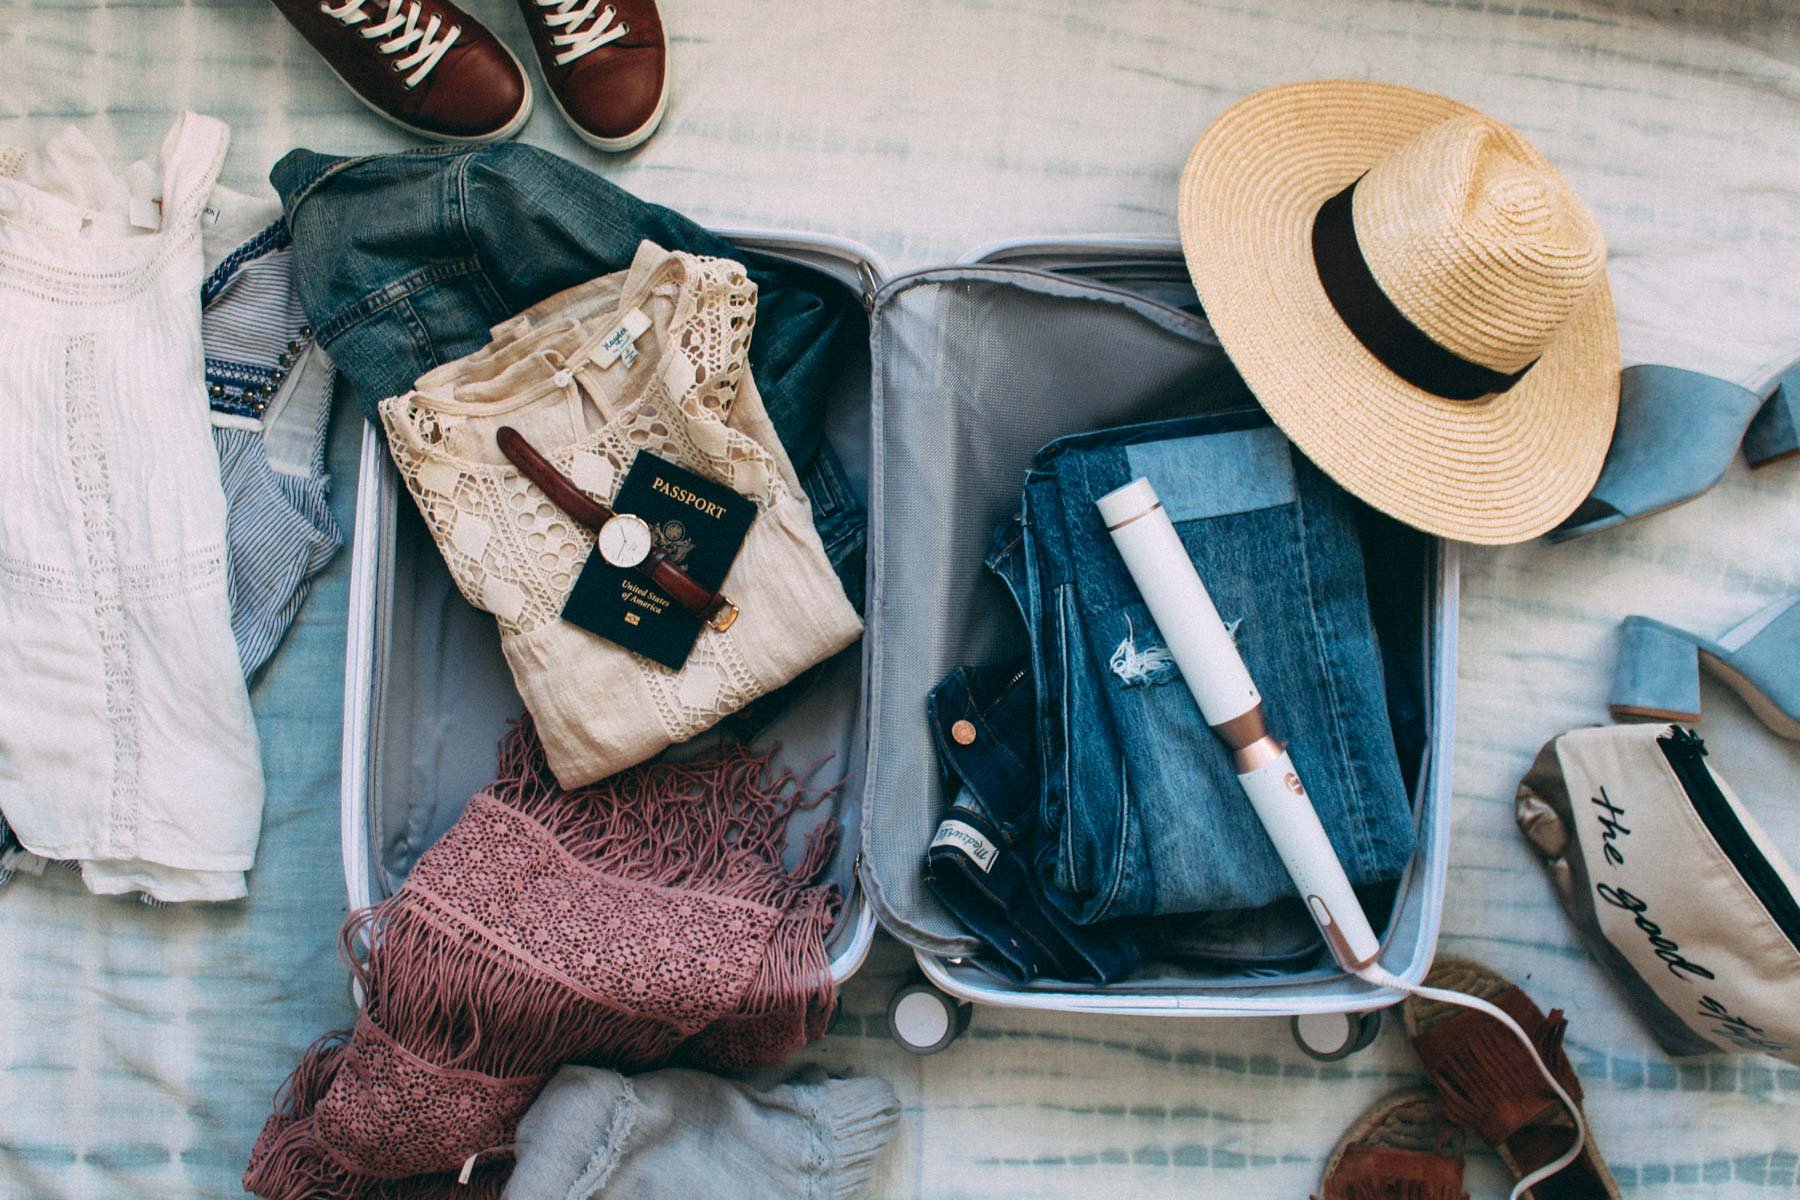 Все вещи 1 моря. Вещи в путешествие. Собранные вещи. Собранные чемоданы с вещами. Комплект вещей для путешествия.